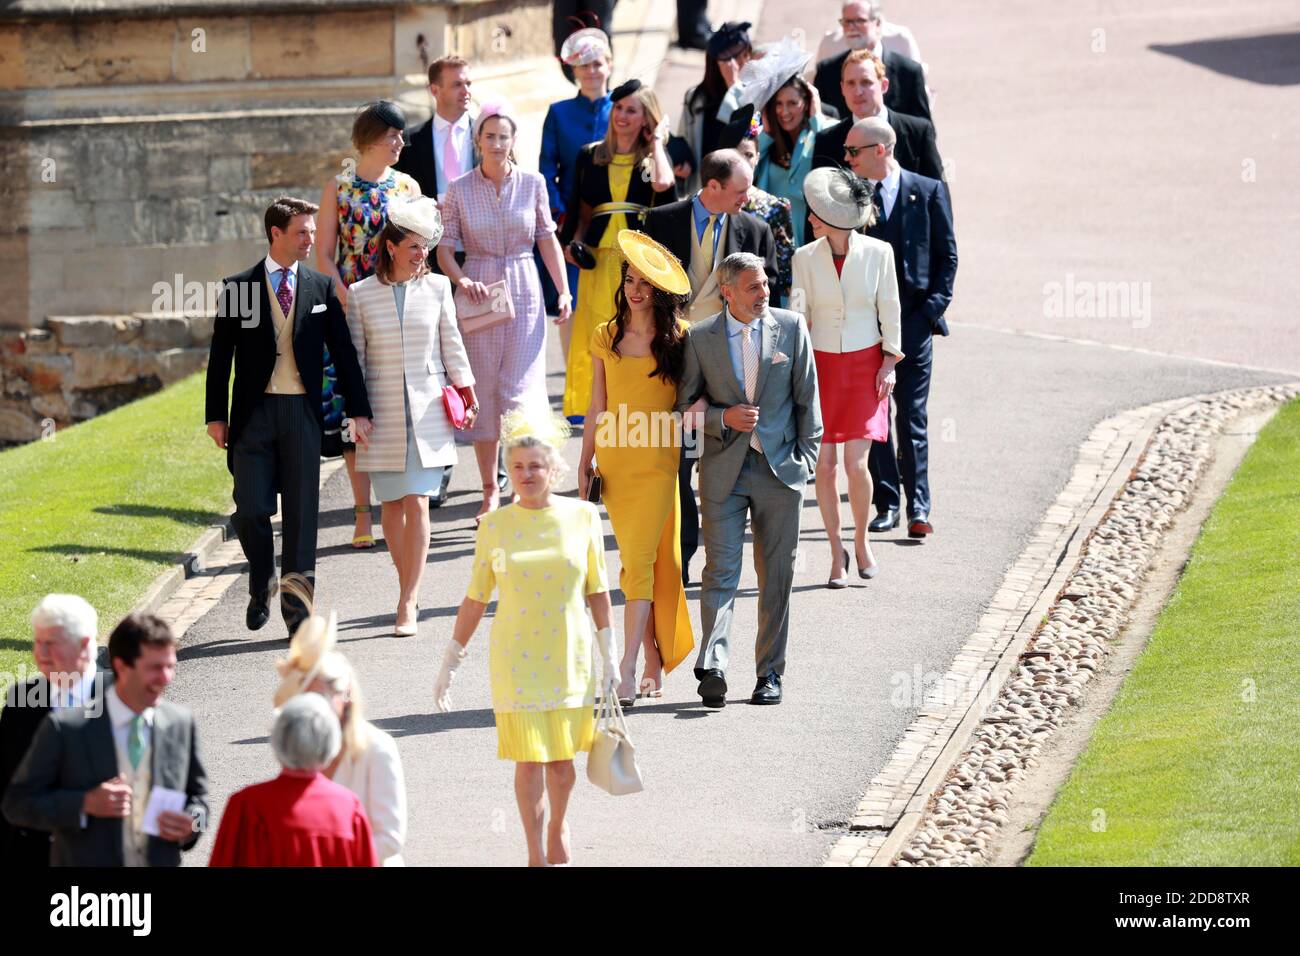 L'acteur AMÉRICAIN George Clooney (R) et son épouse Amal Clooney (C-R), avocat britannique des droits de l'homme, arrivent pour la cérémonie de mariage royale du prince britannique Harry et de Meghan Markle à la chapelle St George à Windsor Castle, à Windsor, en Grande-Bretagne, le 19 mai 2018. Photo de Lauren Hurley/ABACAPRESS;COM Banque D'Images